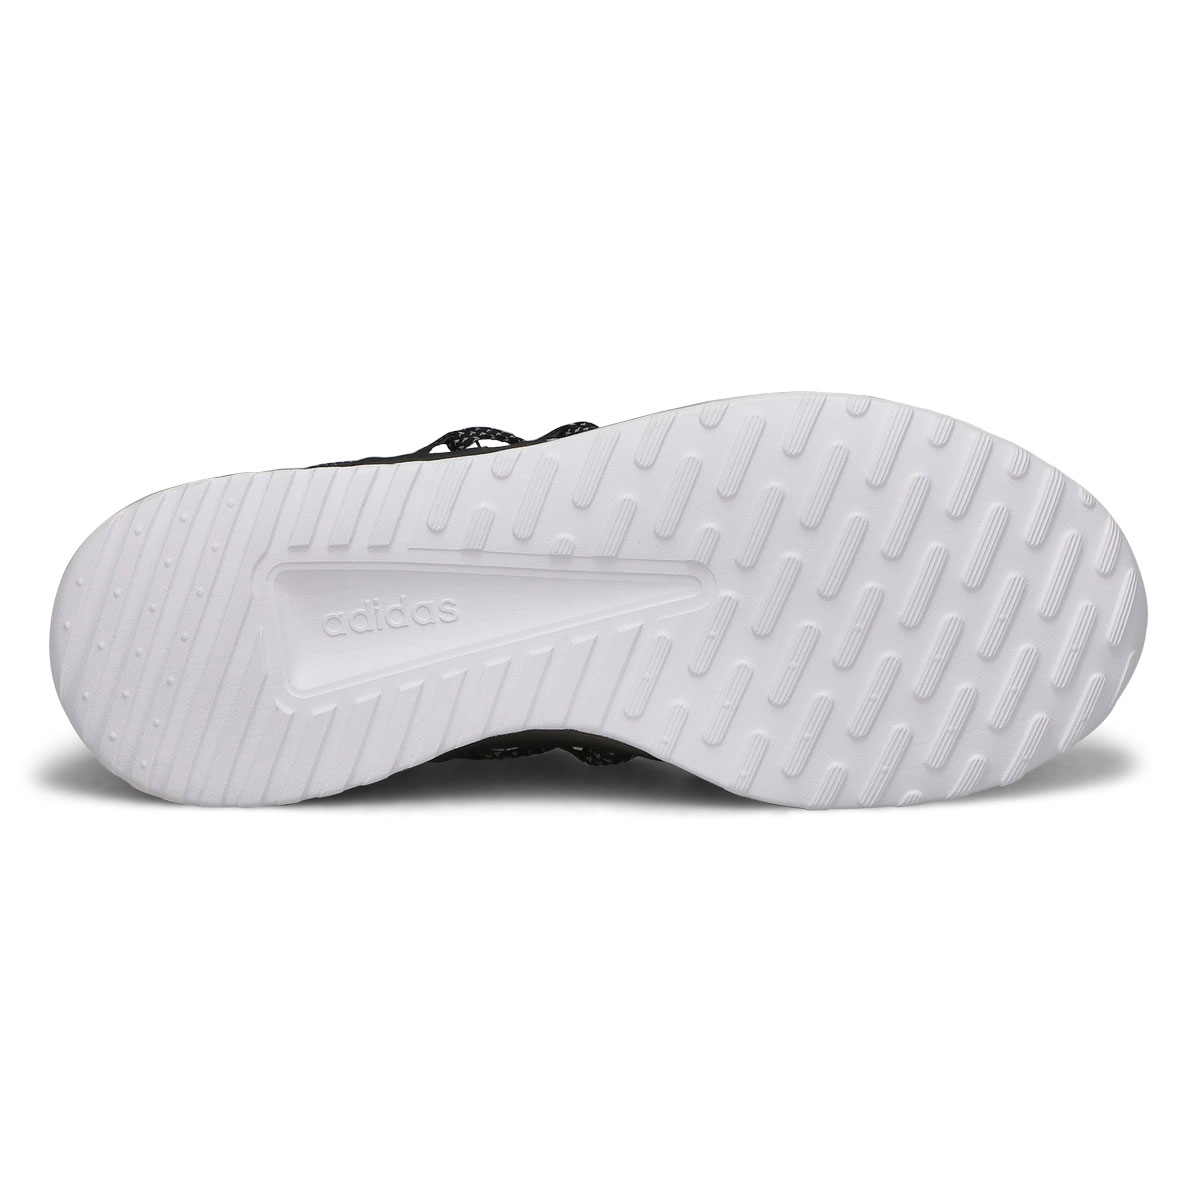 Men's Lite Racer Adapt 5.0 Sneaker - White/Black